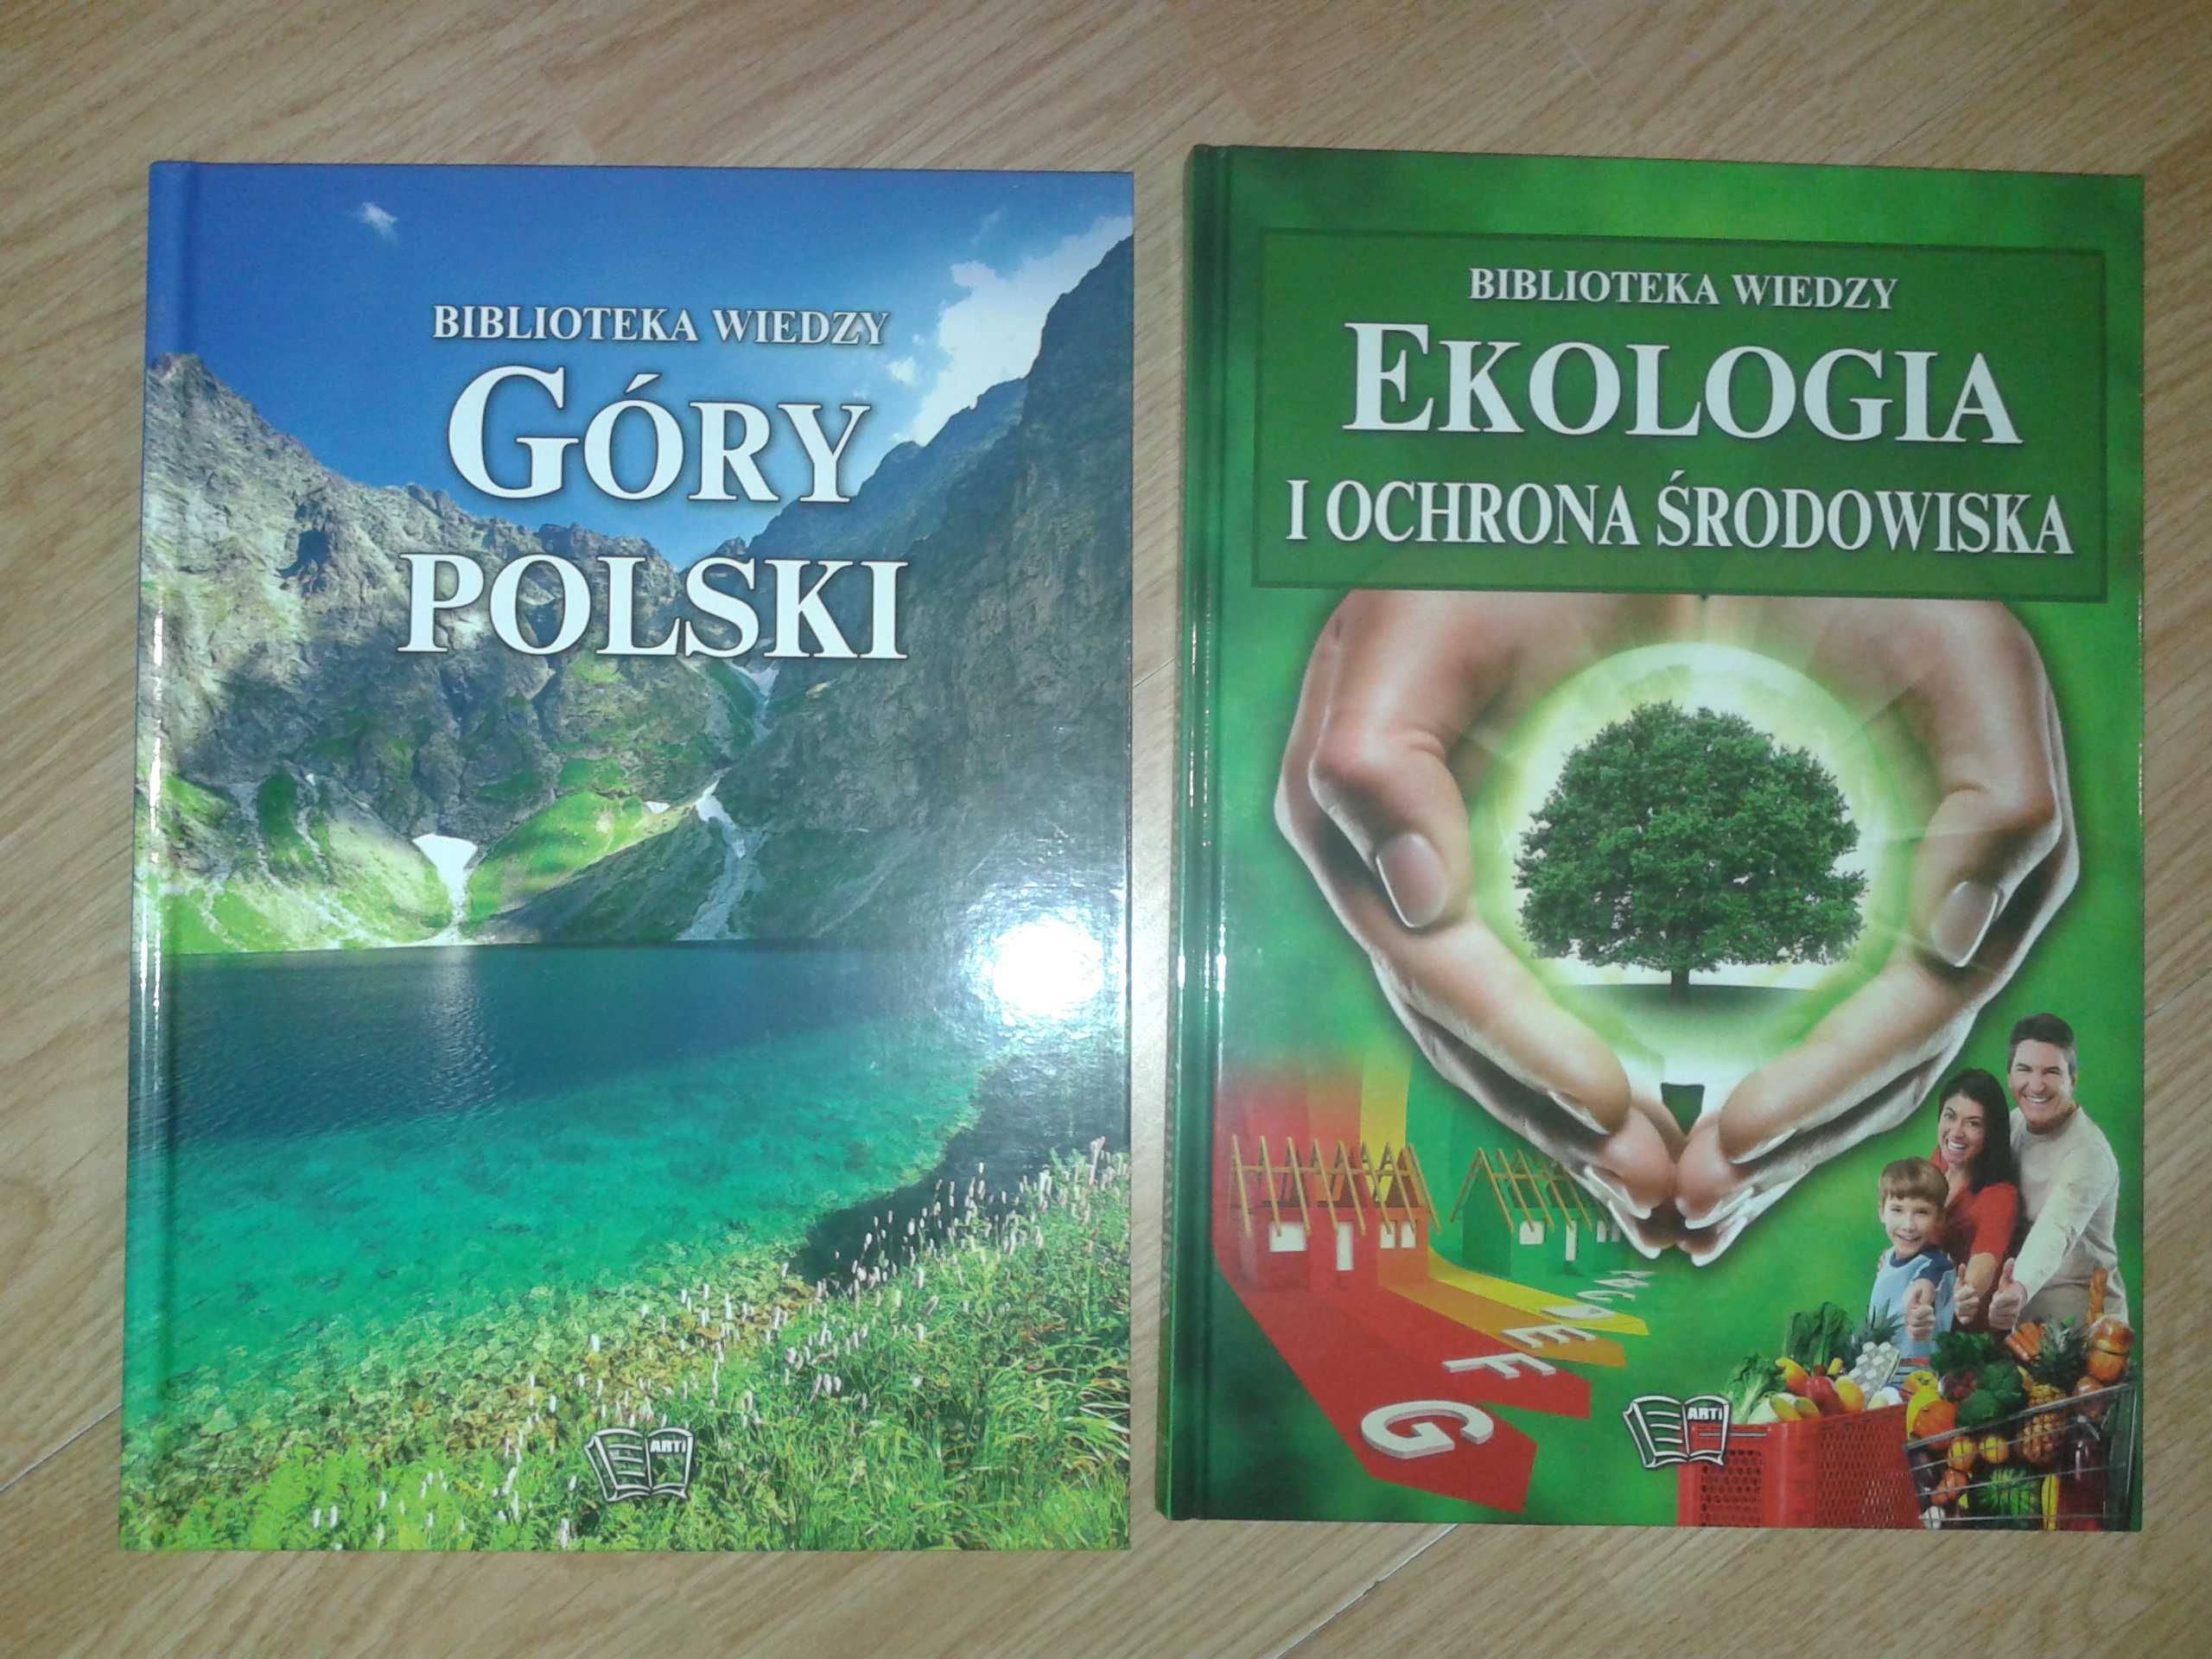 Książka album Biblioteka wiedzy Góry Polski Ekologia na prezent